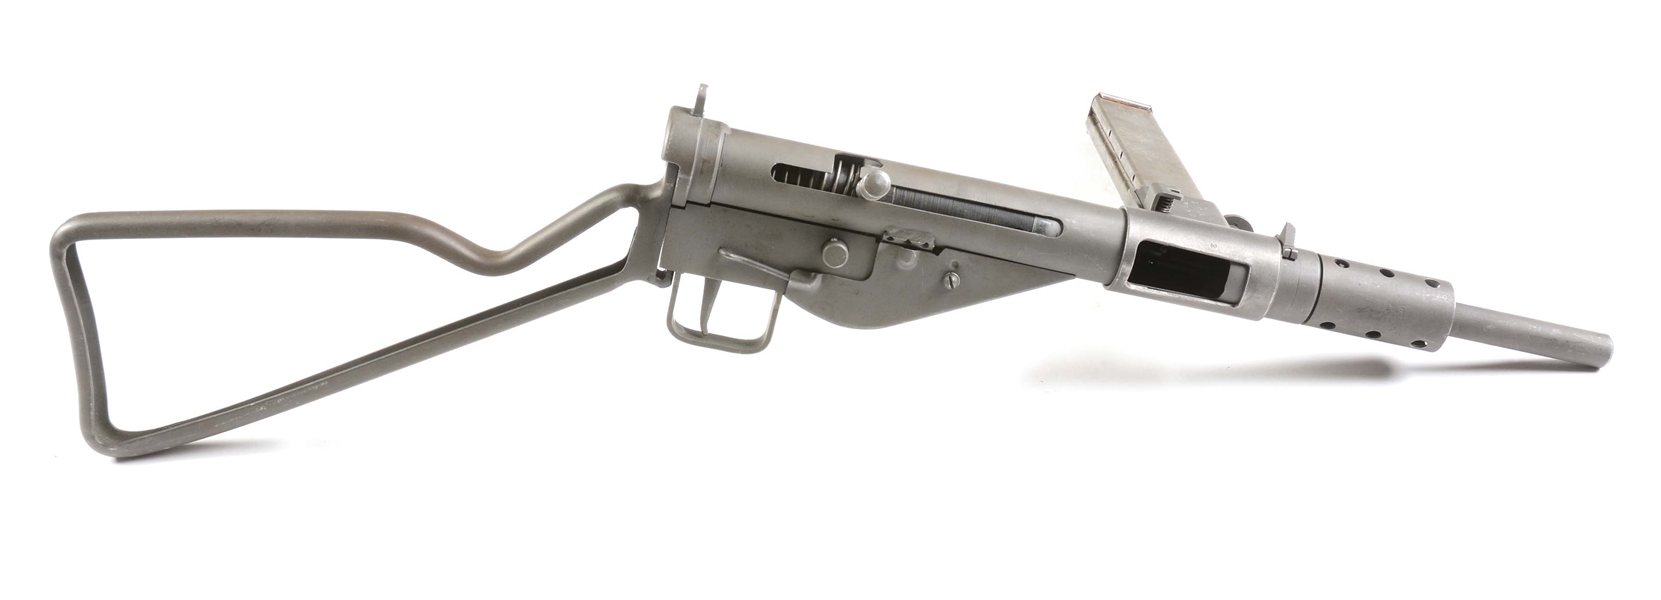 (N) DLO REGISTERED WORLD WAR II BRITISH STEN MK II MACHINE GUN WITH SPARE STEN MK II PARTS KIT (FULLY TRANSFERABLE).